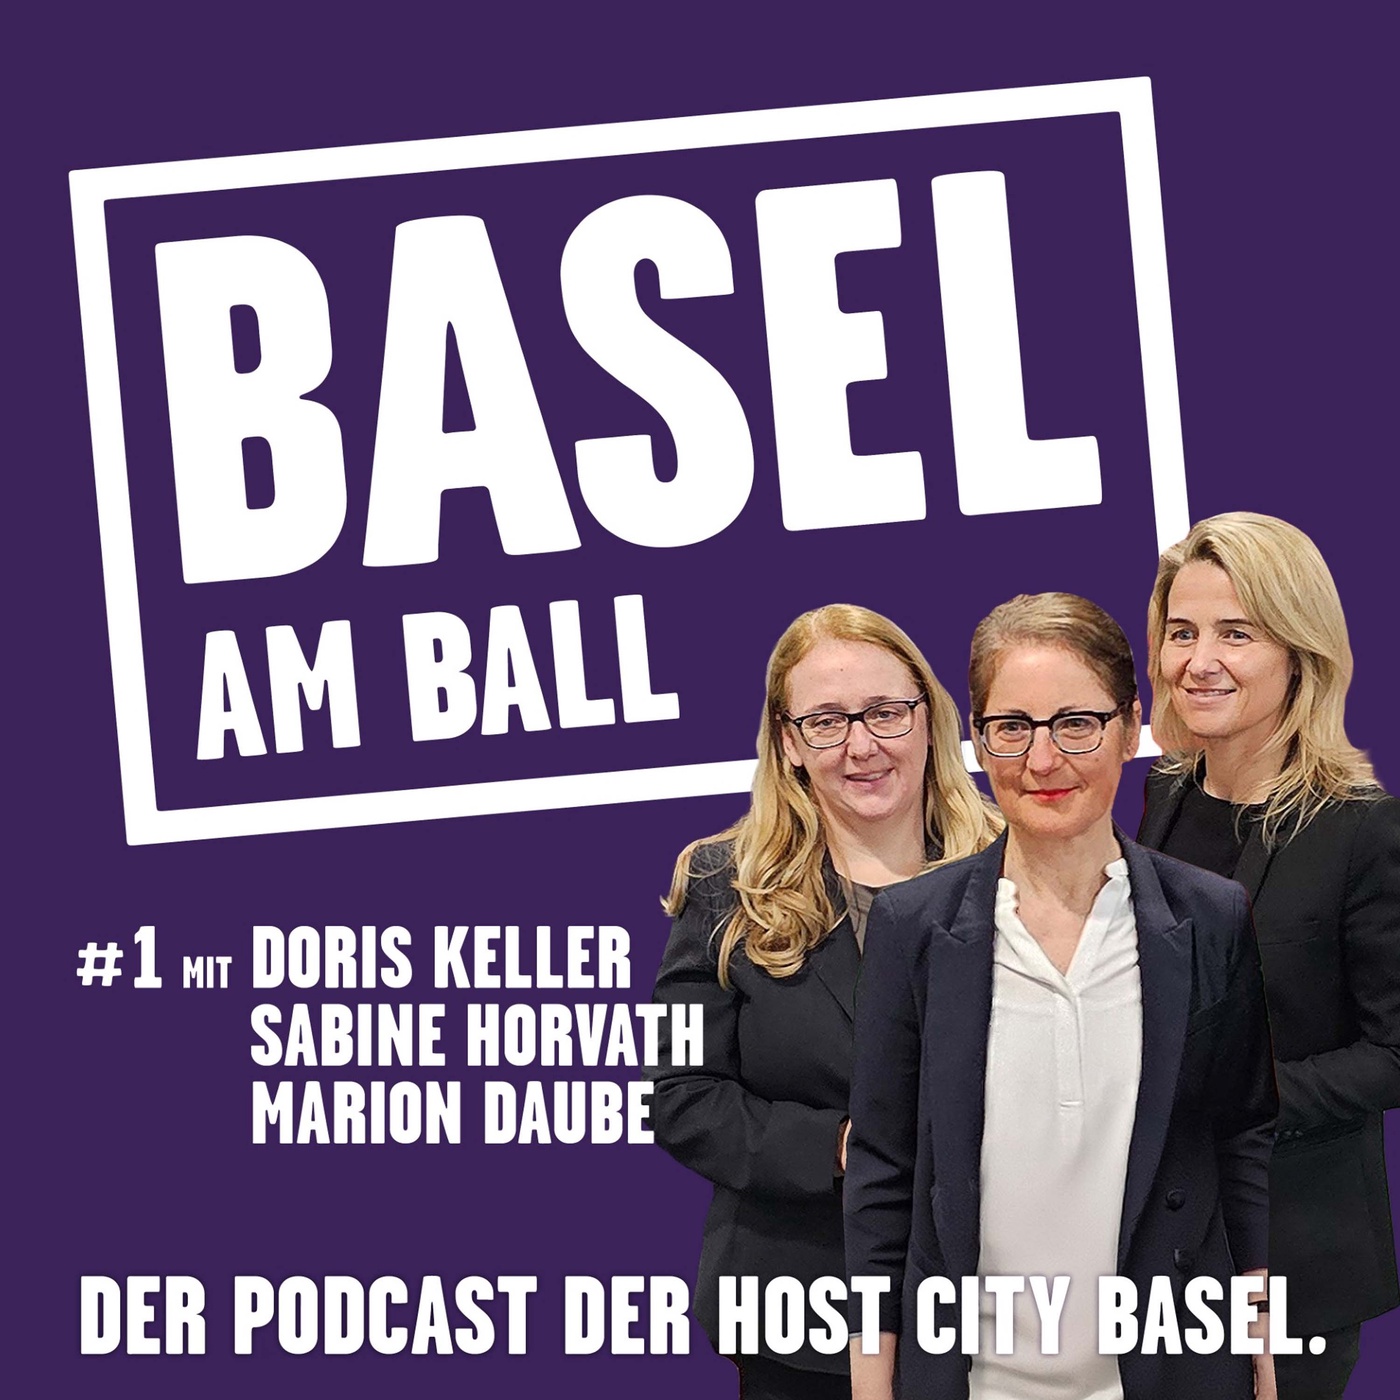 Basel am Ball #1 mit Doris Keller, Sabine Horvath und Marion Daube